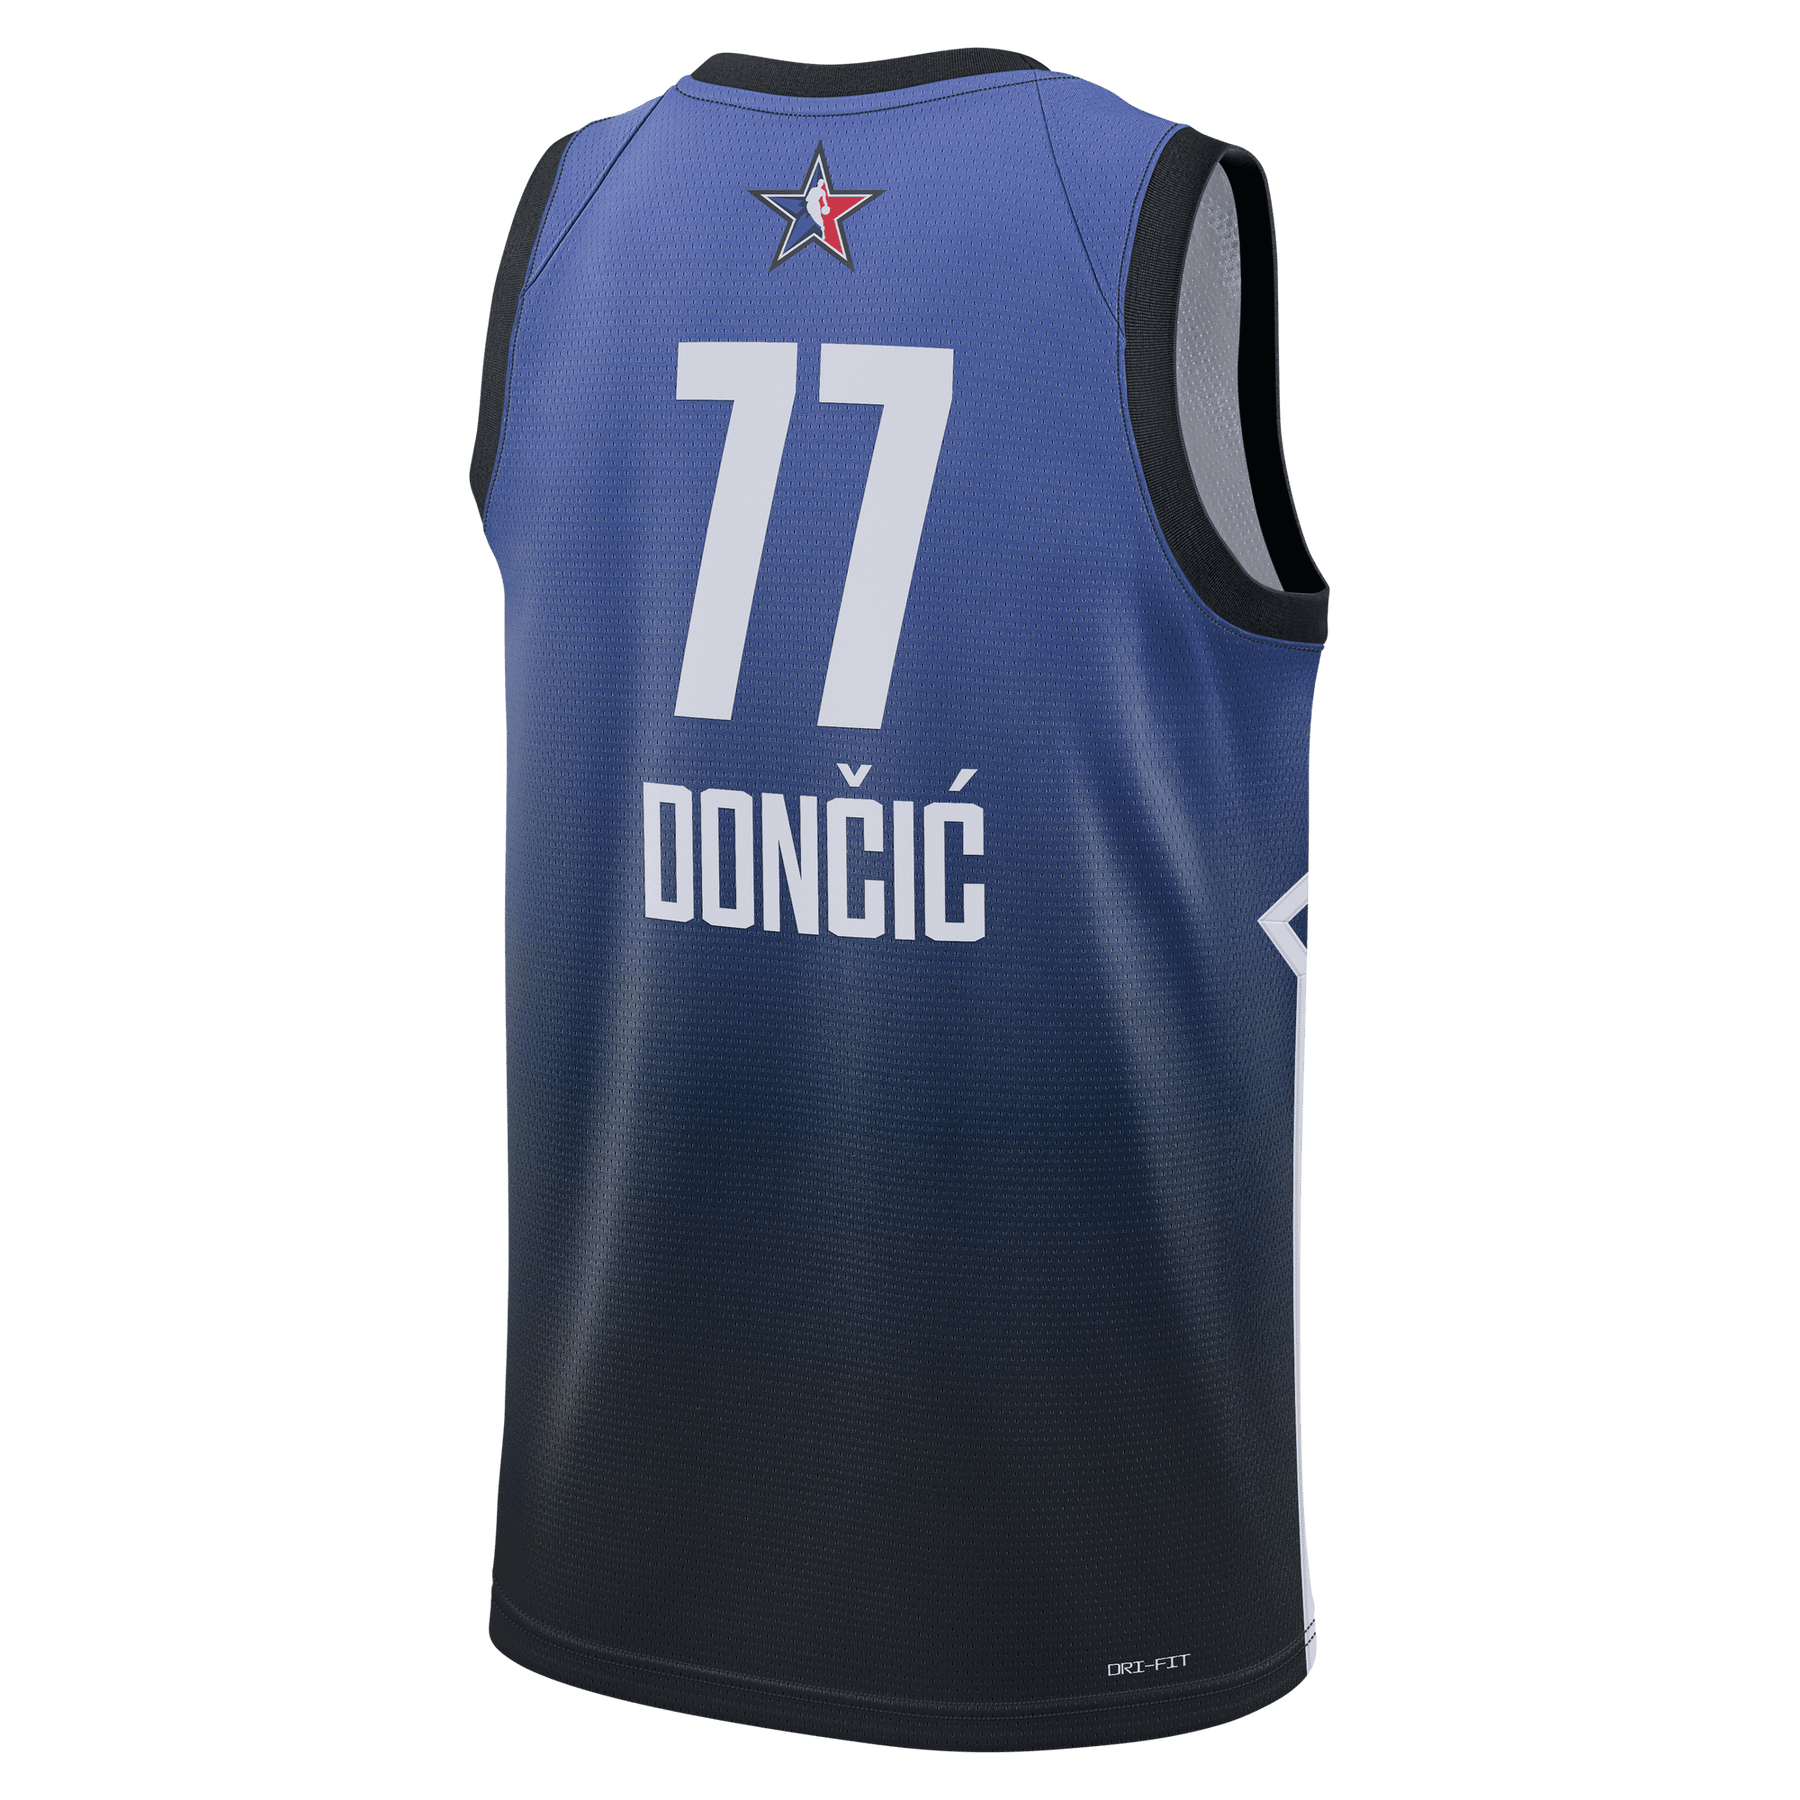 Dallas Mavericks Luka Doncic Basketball 2023 Shirt - Bring Your